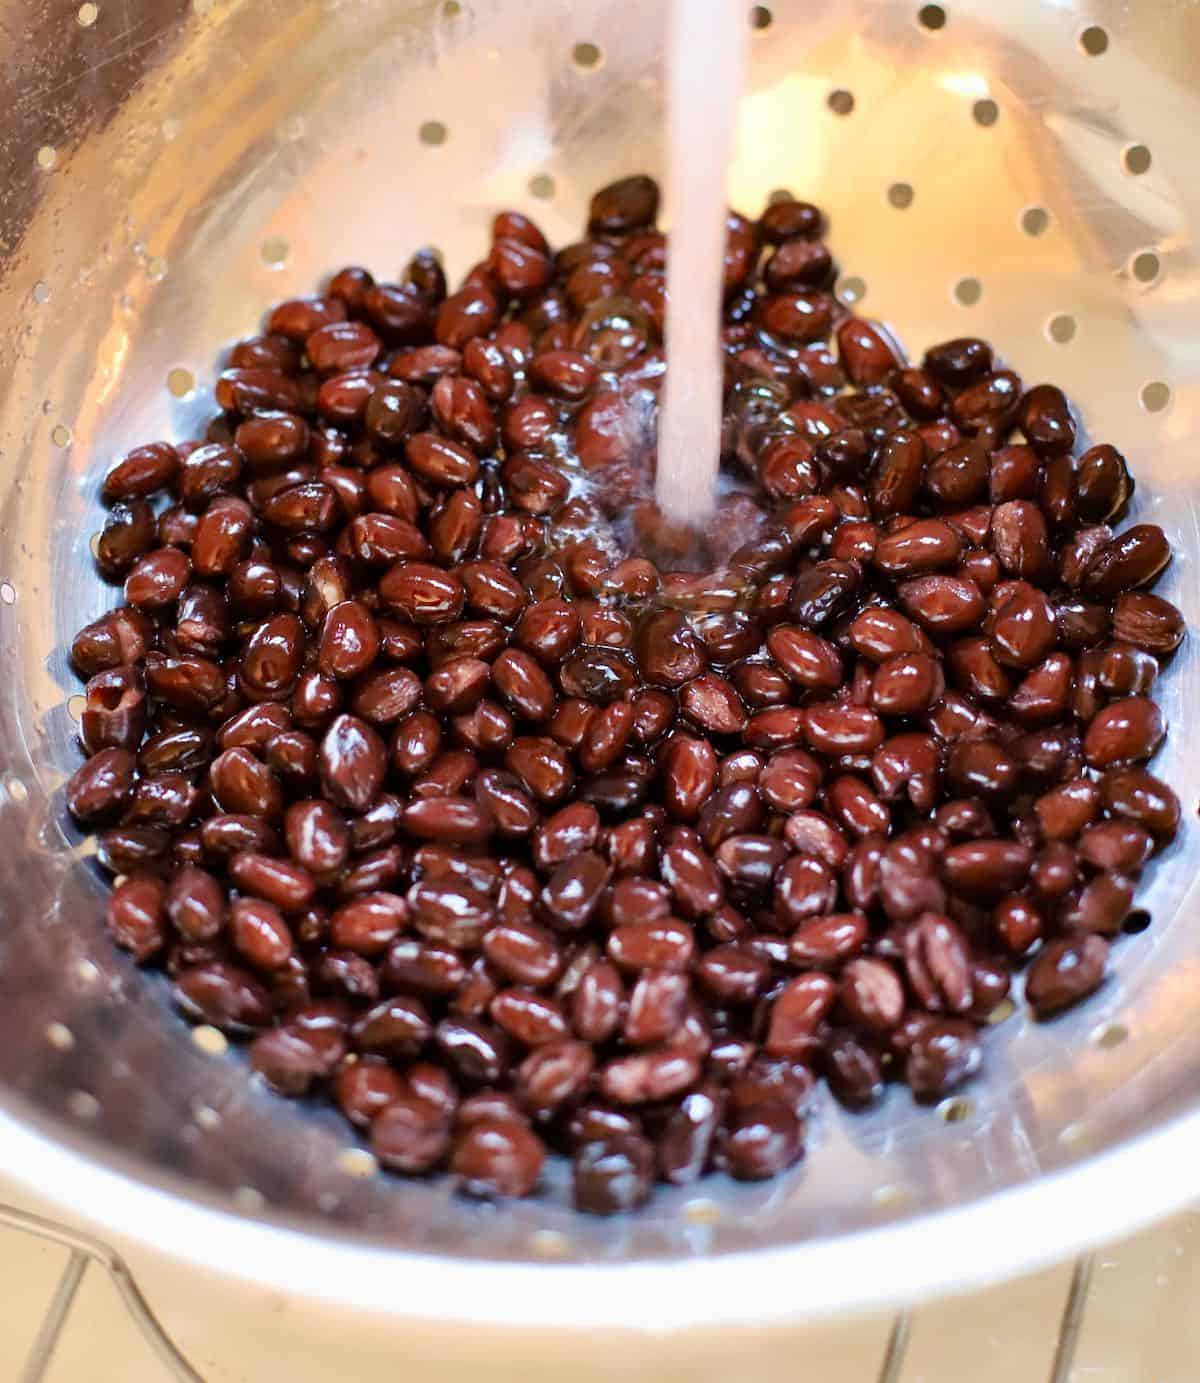 Black beans in a colander under running water.